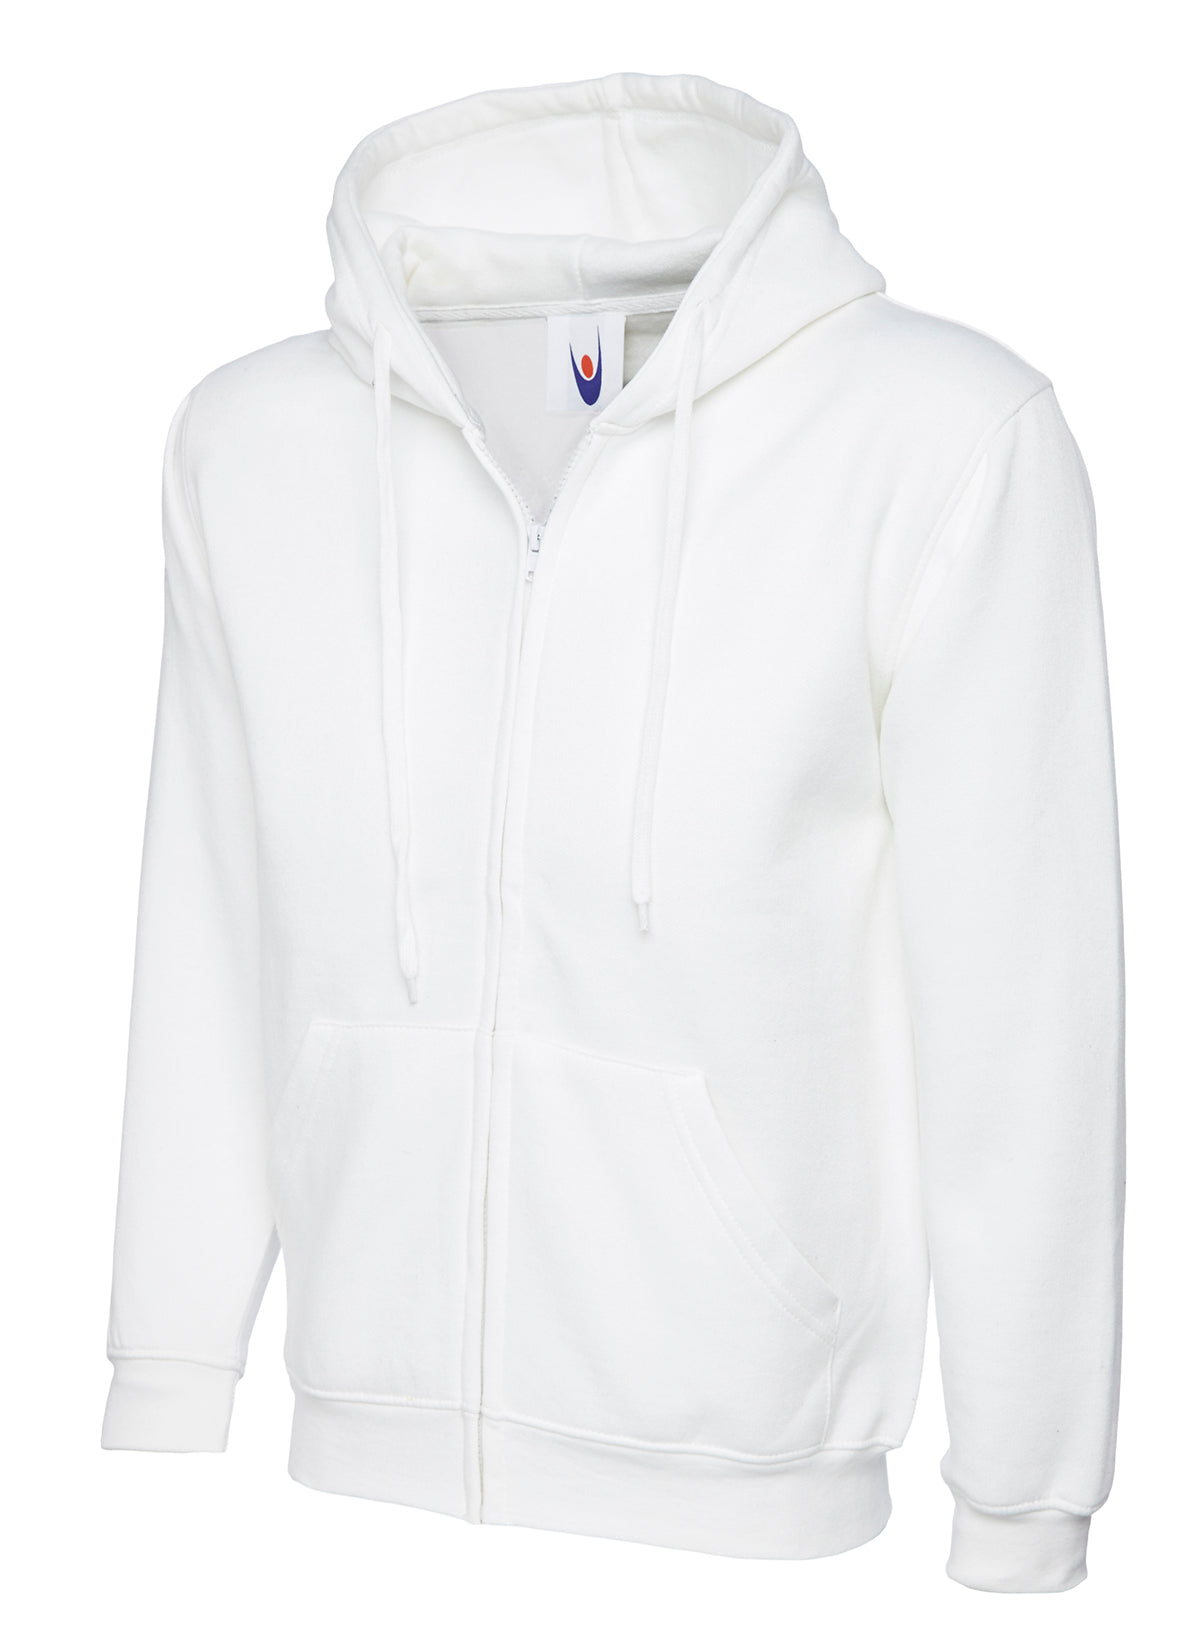 Uneek Adults Unisex Classic Full Zip Hooded Sweatshirt UC504 - White